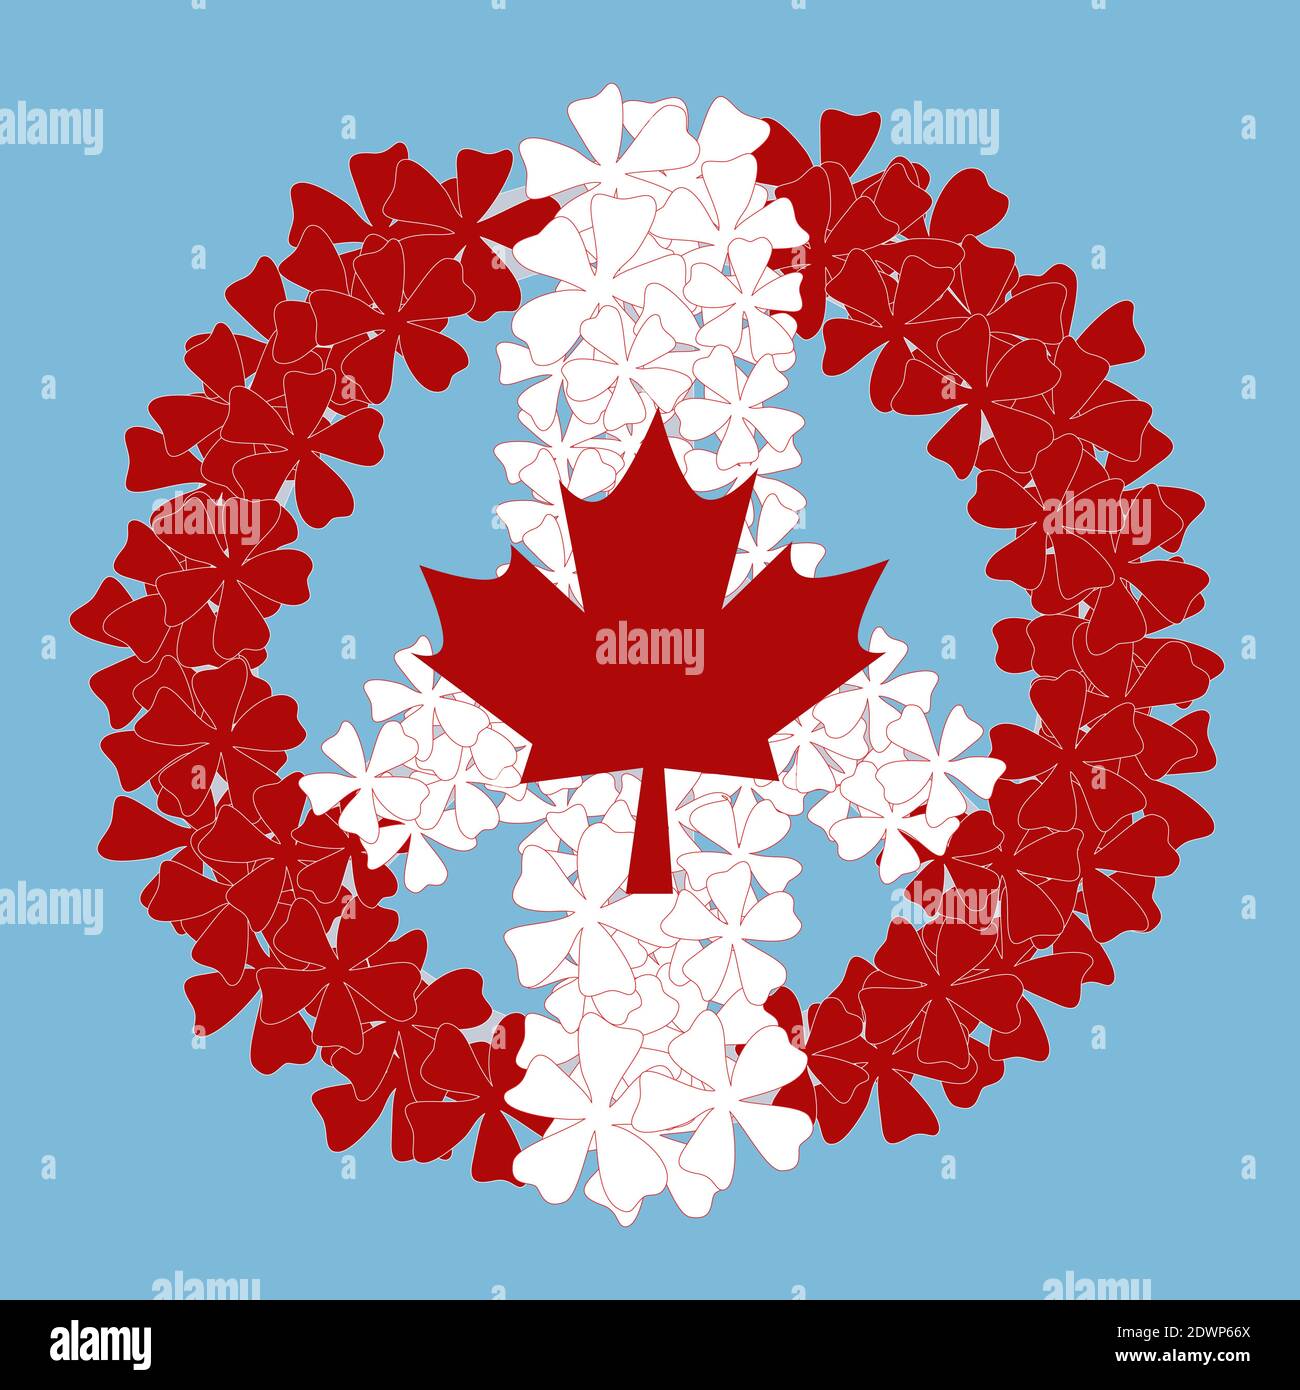 Bandiera nazionale del Canada Day. Bandiera canadese a forma di segno di pace. Segno di pace fatto di fiori bianchi e rossi. Illustrazione vettoriale isolata su ba blu Illustrazione Vettoriale